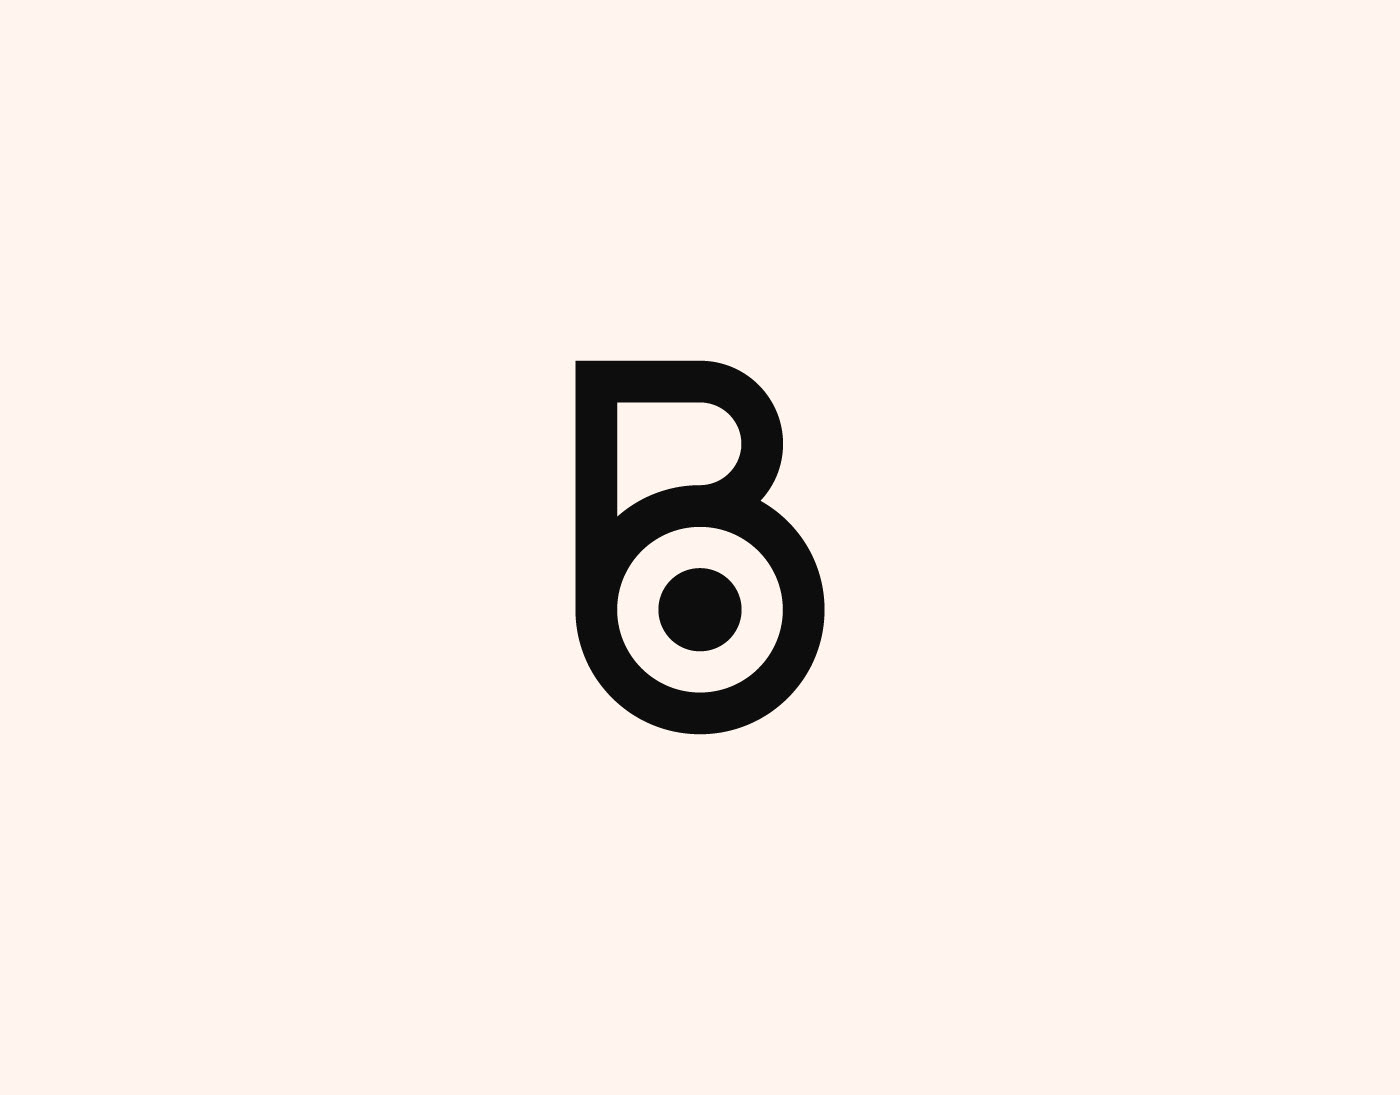 Ob Logo Images, Illustrations & Vectors (Free) - Bigstock